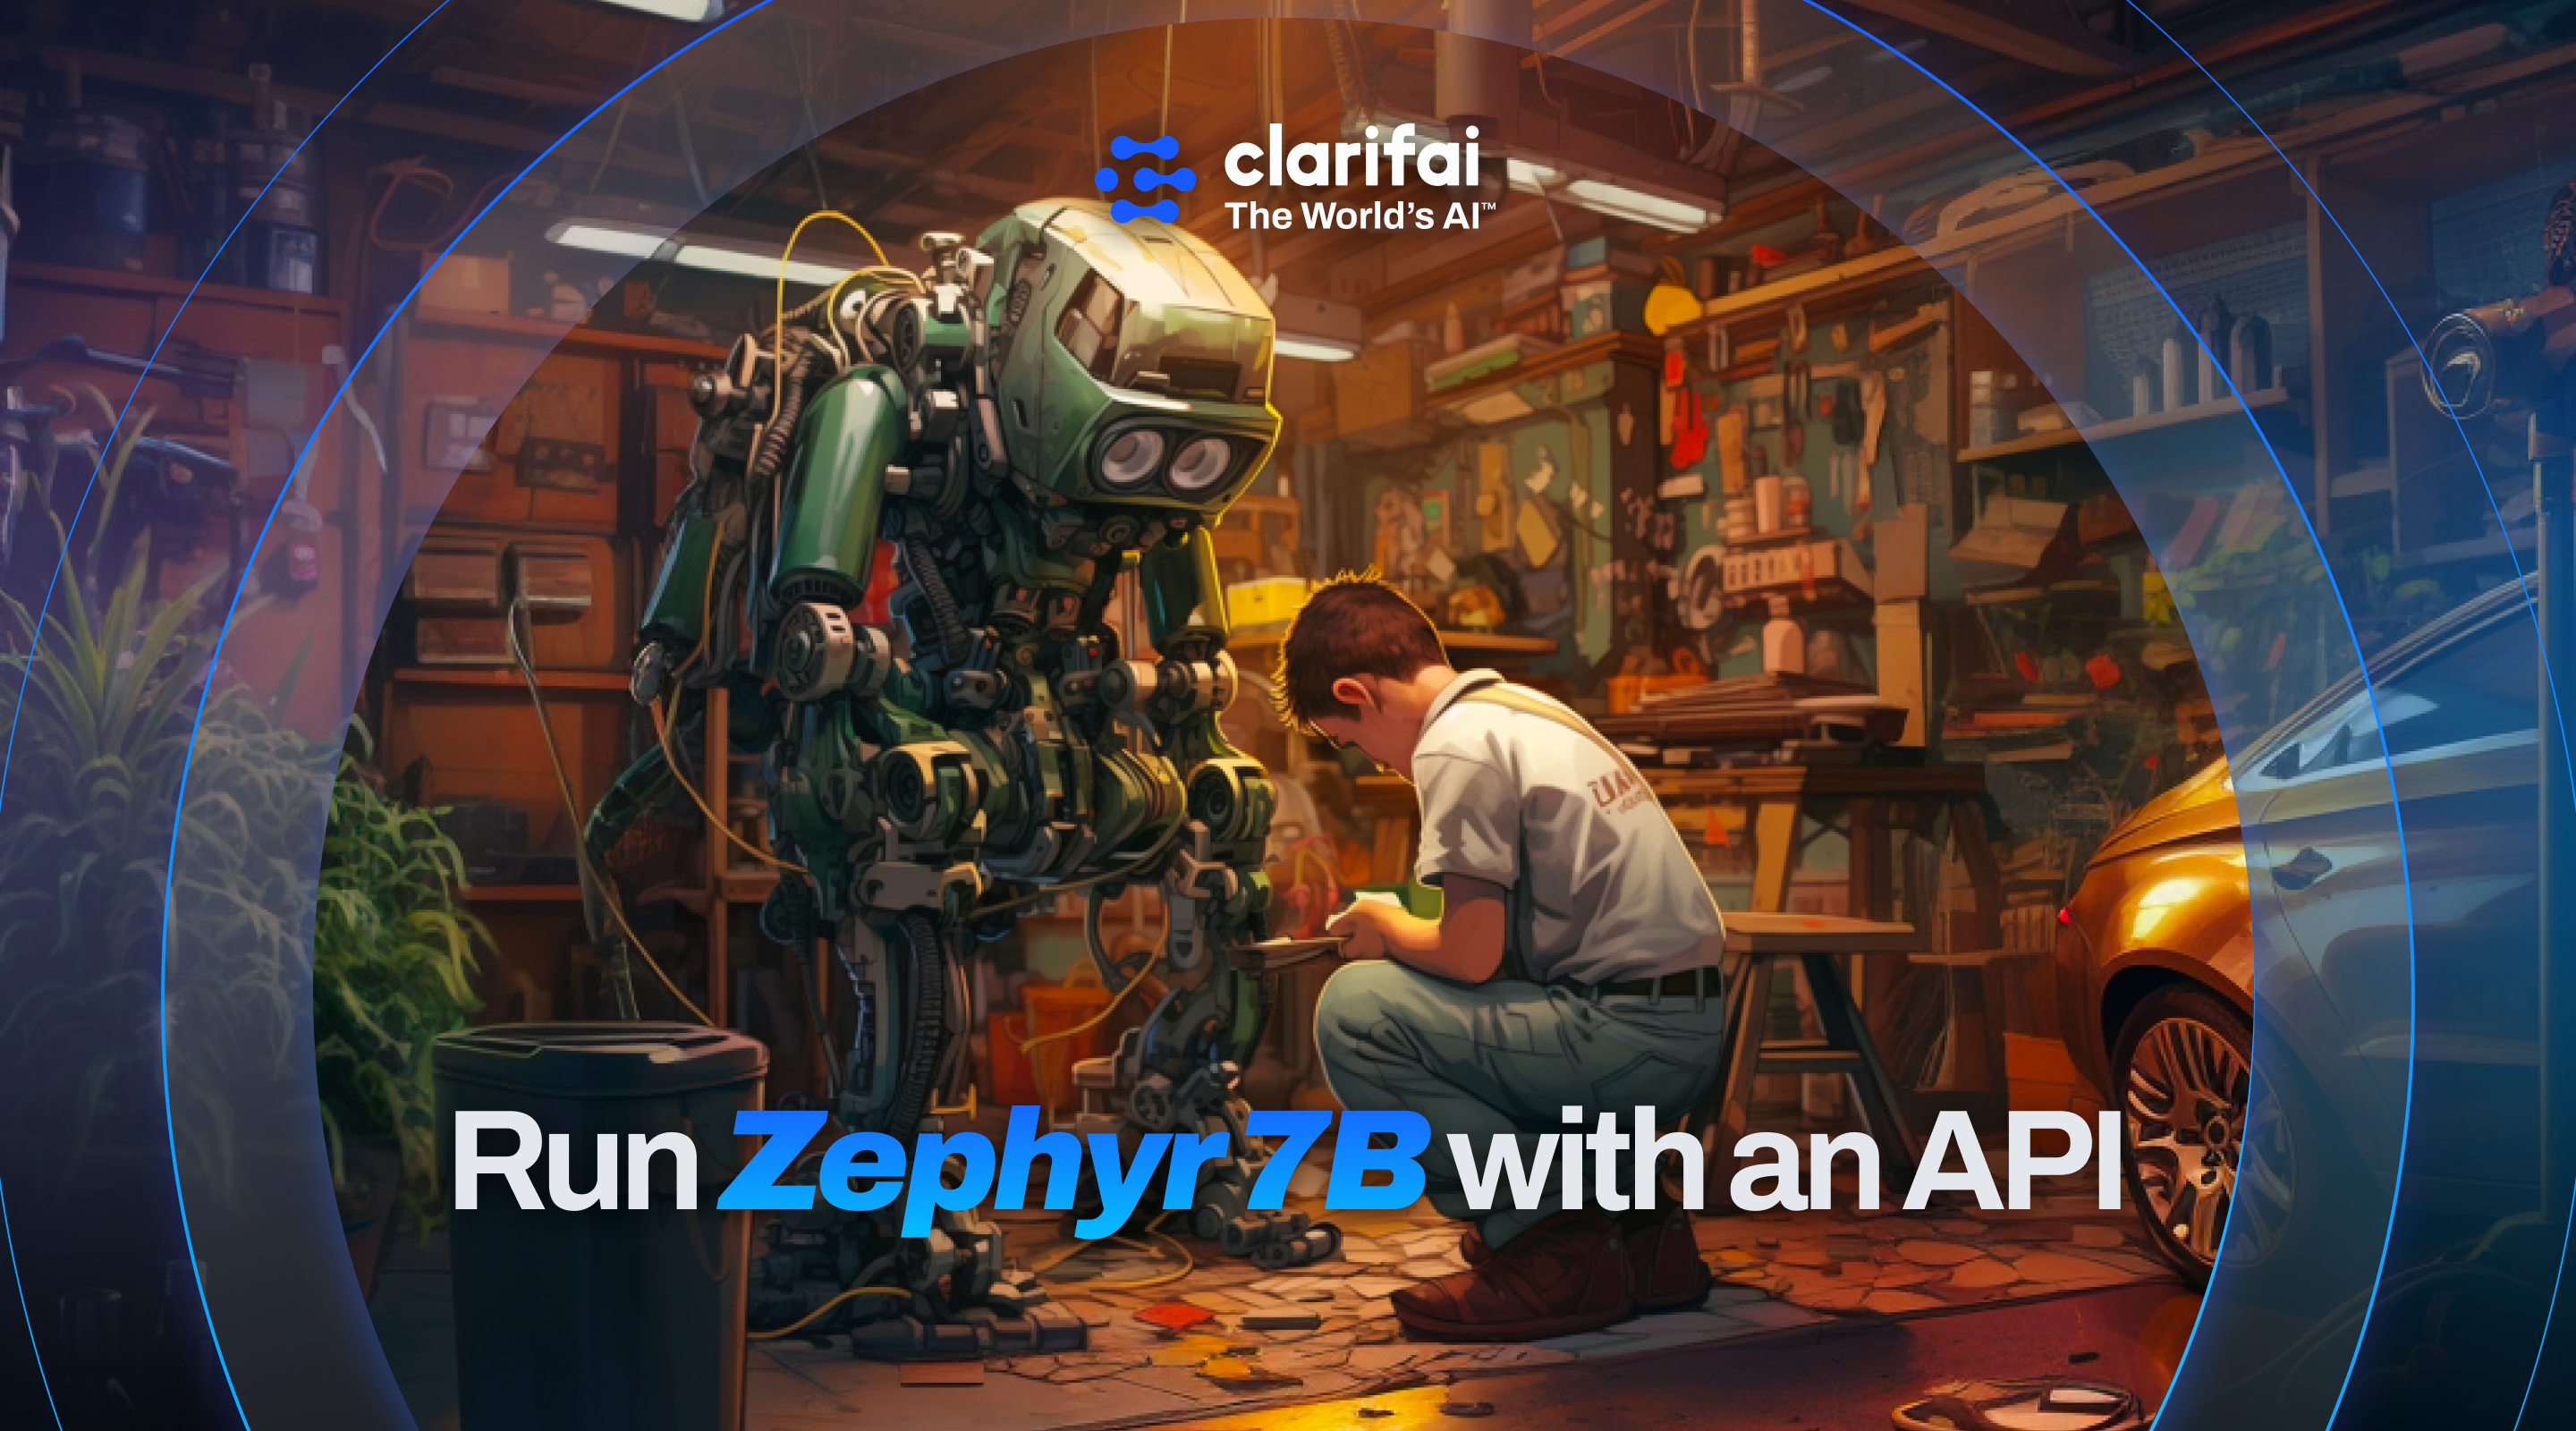 Run Zephyr 7B with an API